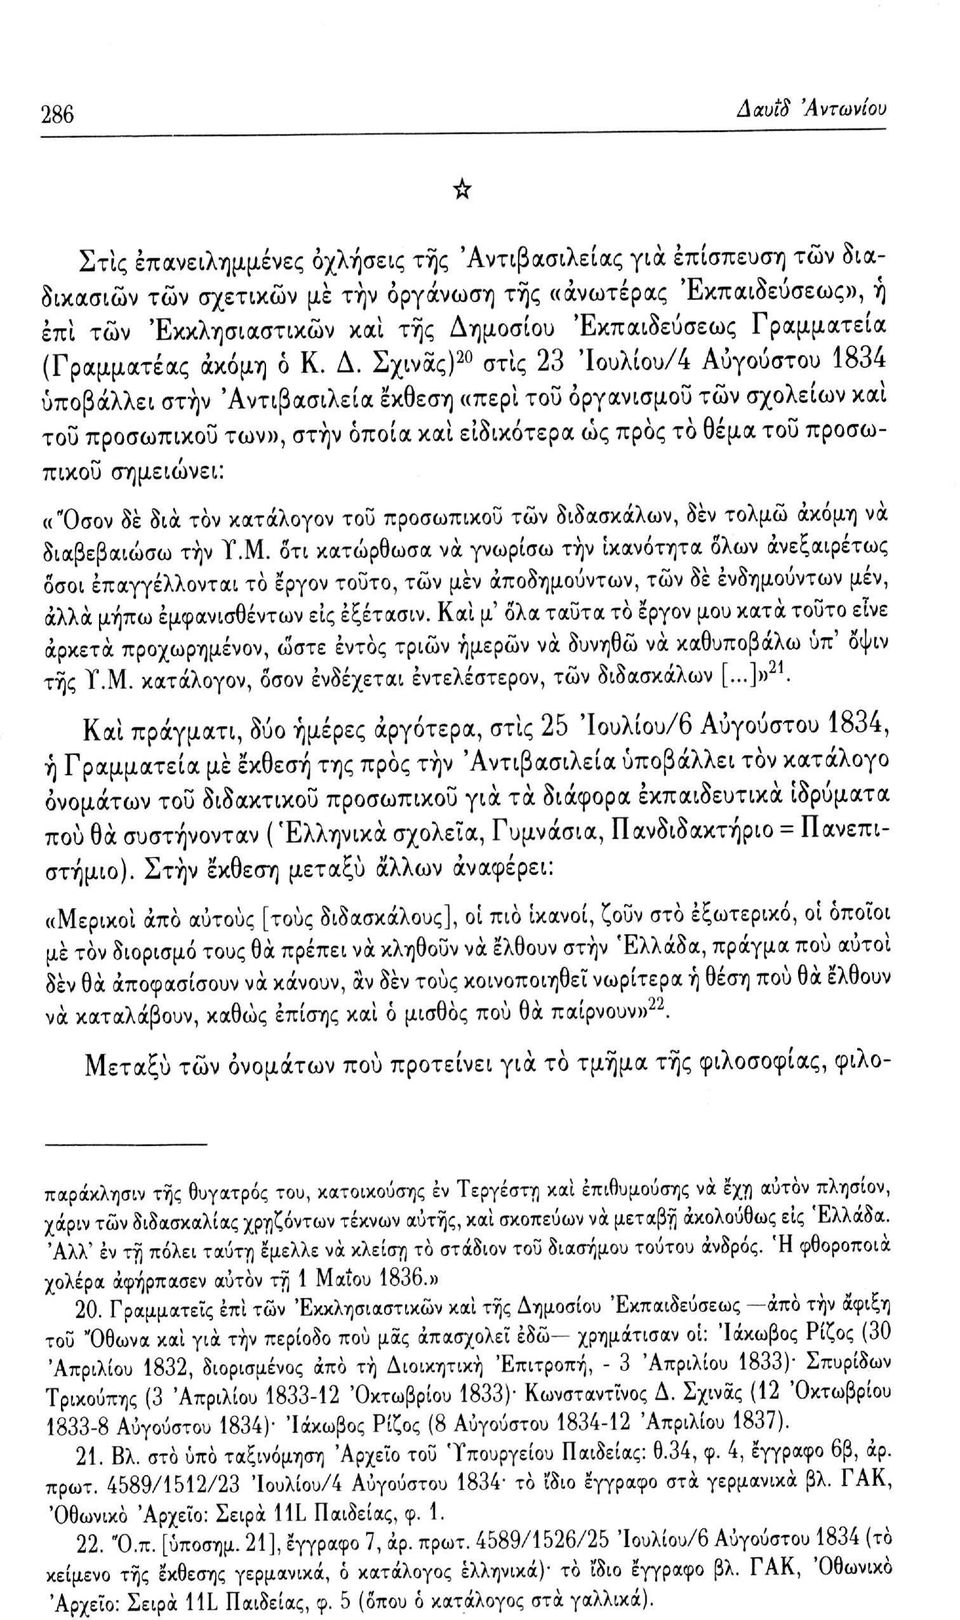 Σχινάς) 20 στις 23 Ίουλίου/4 Αυγούστου 1834 υποβάλλει στην 'Αντιβασιλεία έκθεση «περί του οργανισμού τών σχολείων και του προσωπικού των», στην οποία και ειδικότερα ώς προς το θέμα του προσωπικού